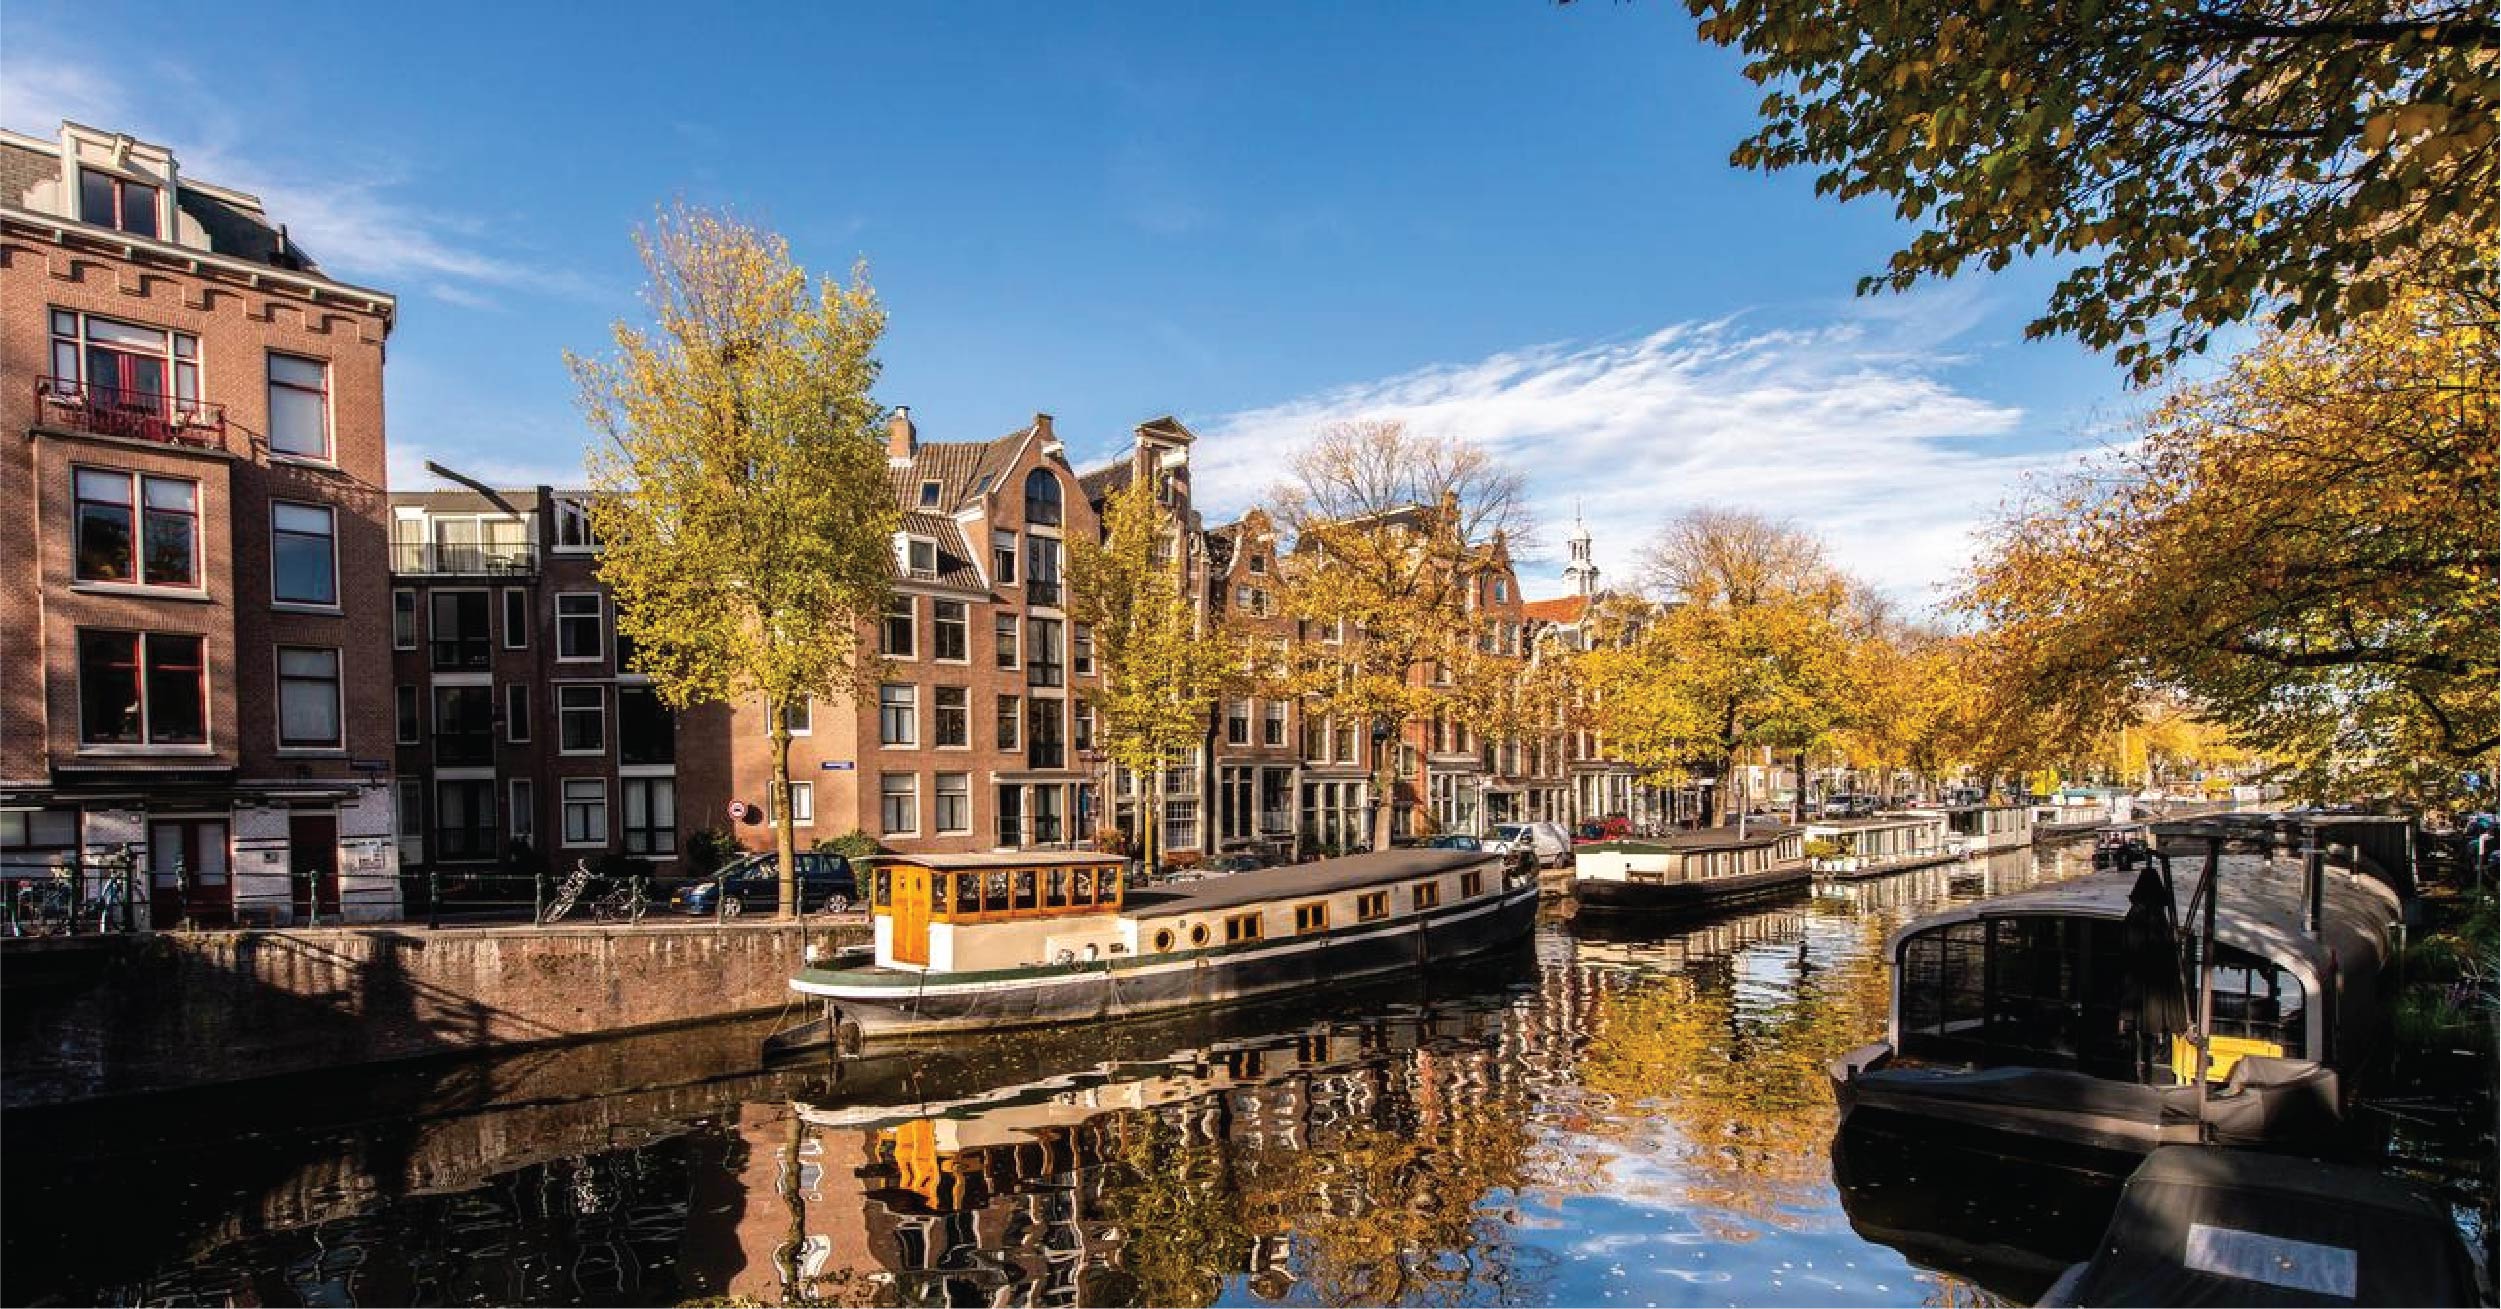 Địa điểm nổi tiếng ở Amsterdam, Hà Lan du học sinh phải check-in ngay